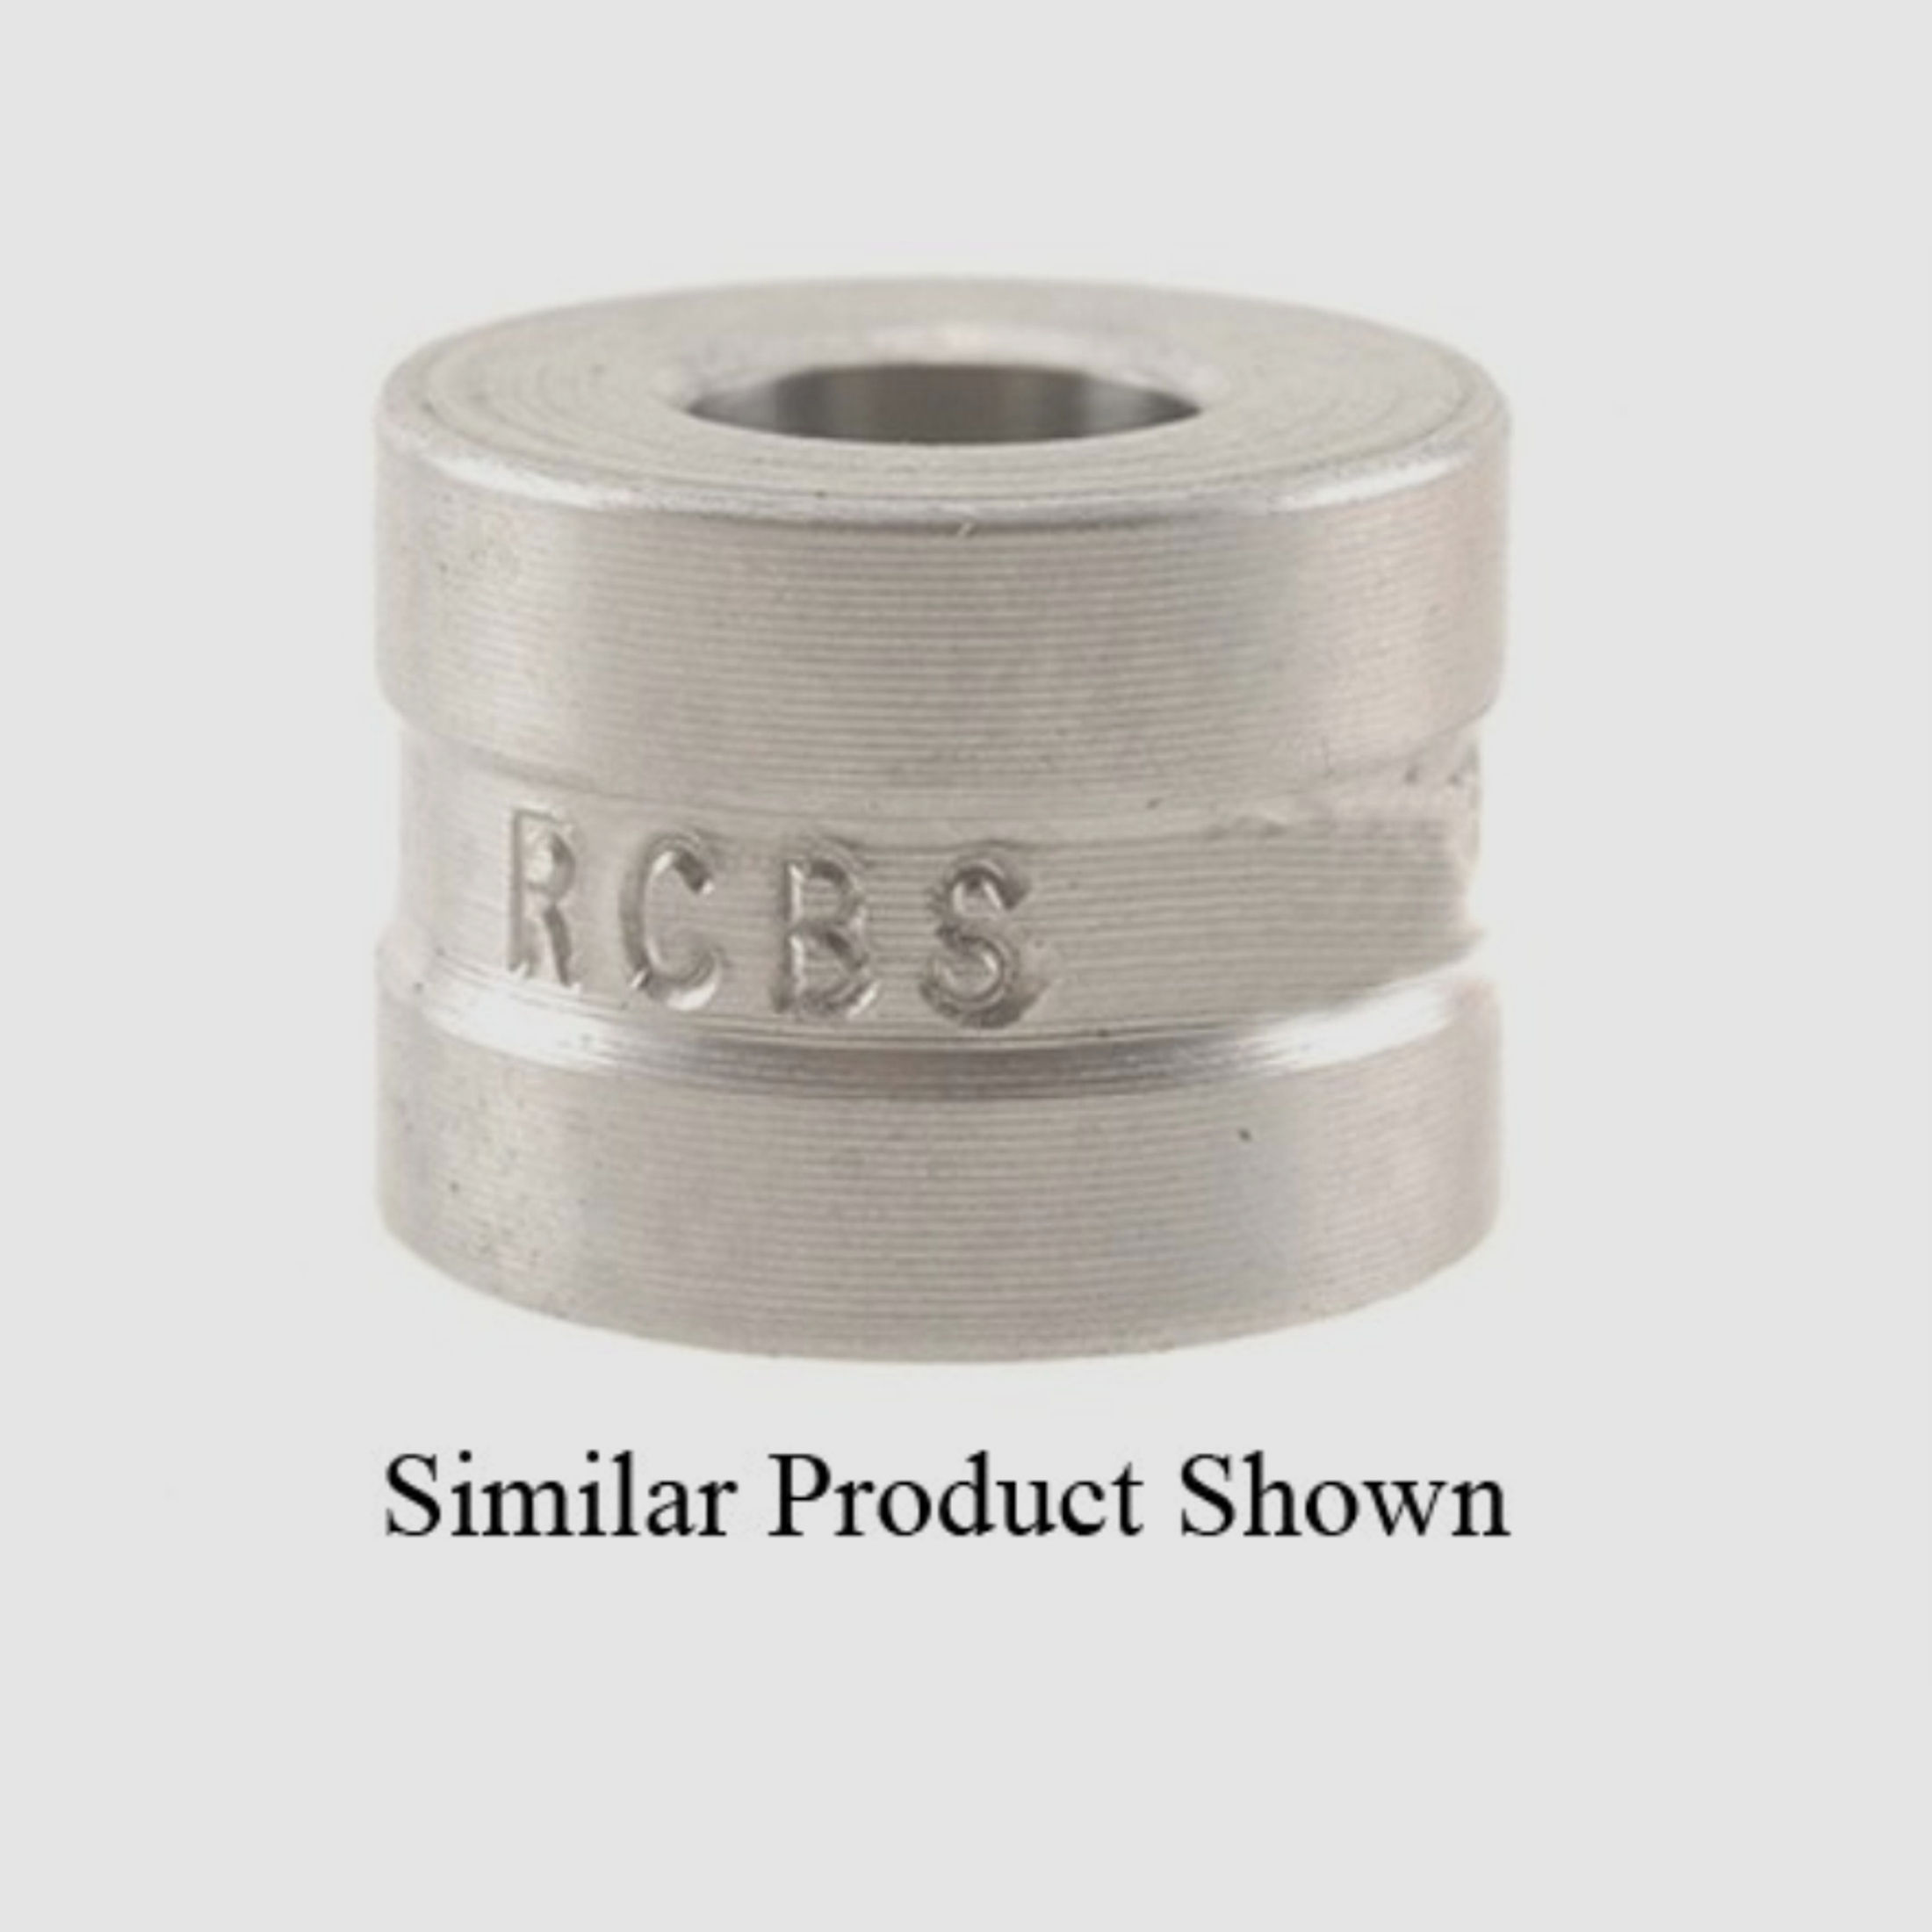 RCBS Steel Neck Sizer Die Bushing .299